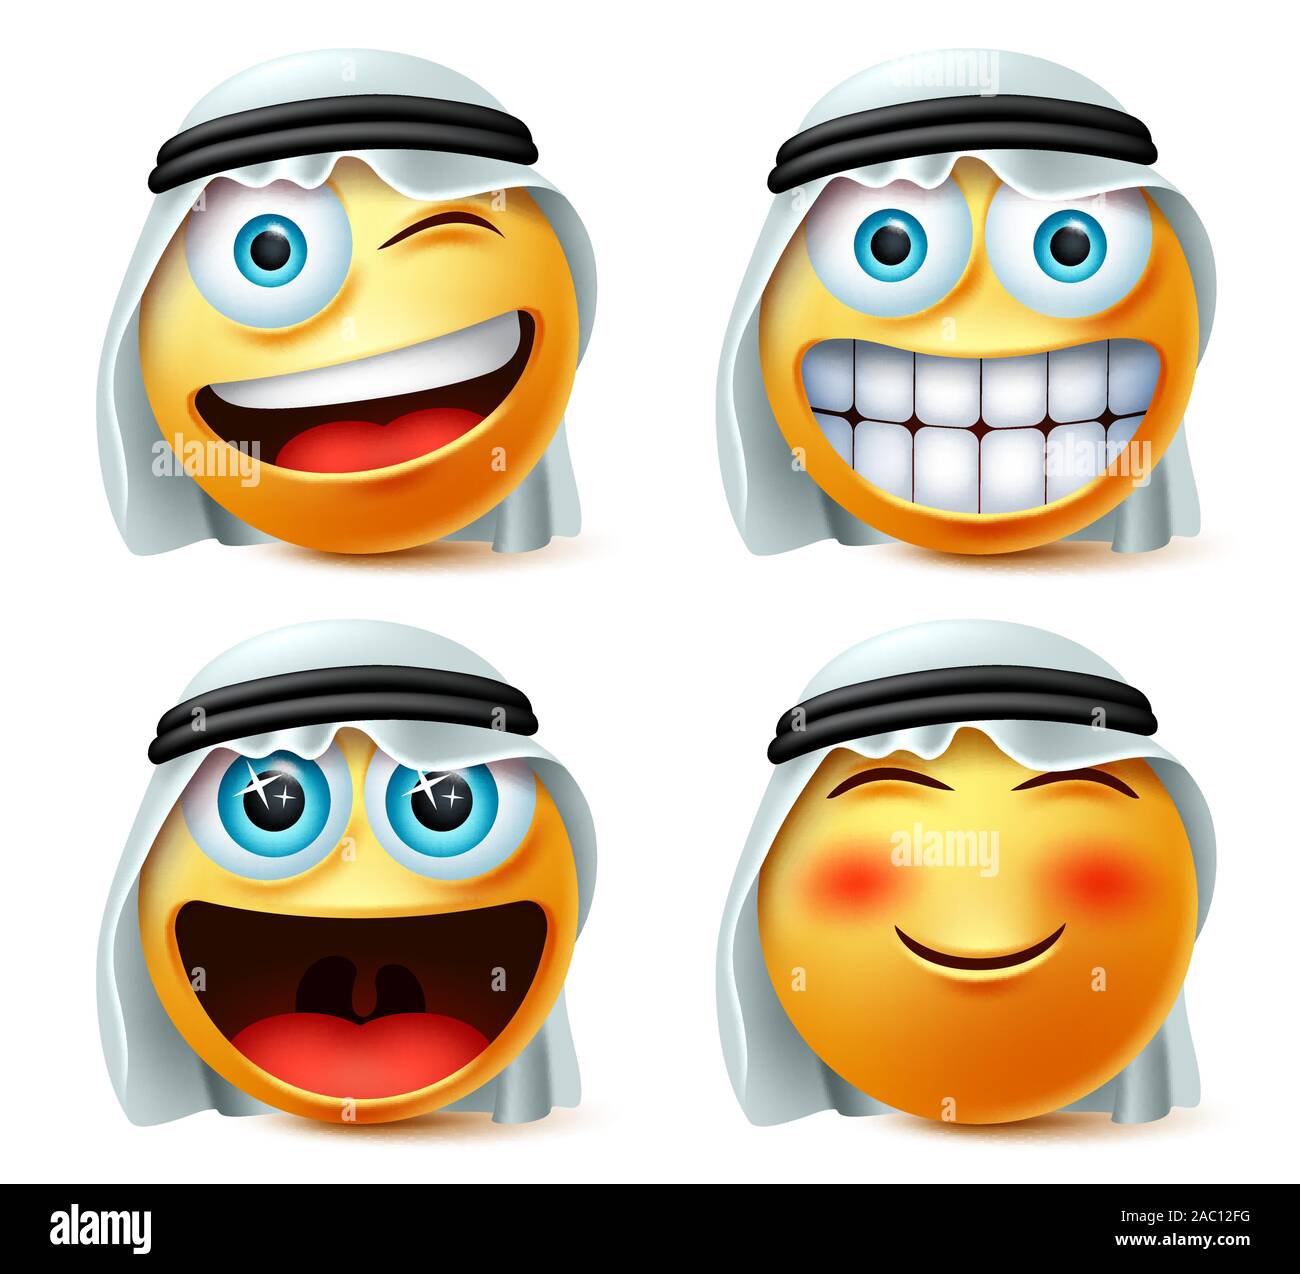 Smiley arabischen Emoticon oder emojis Vektor einrichten. Saudi-arabischen Smiley Kopf mit frechen und aufgeregt, die traditionelle thwab in weißem Hintergrund. Stock Vektor